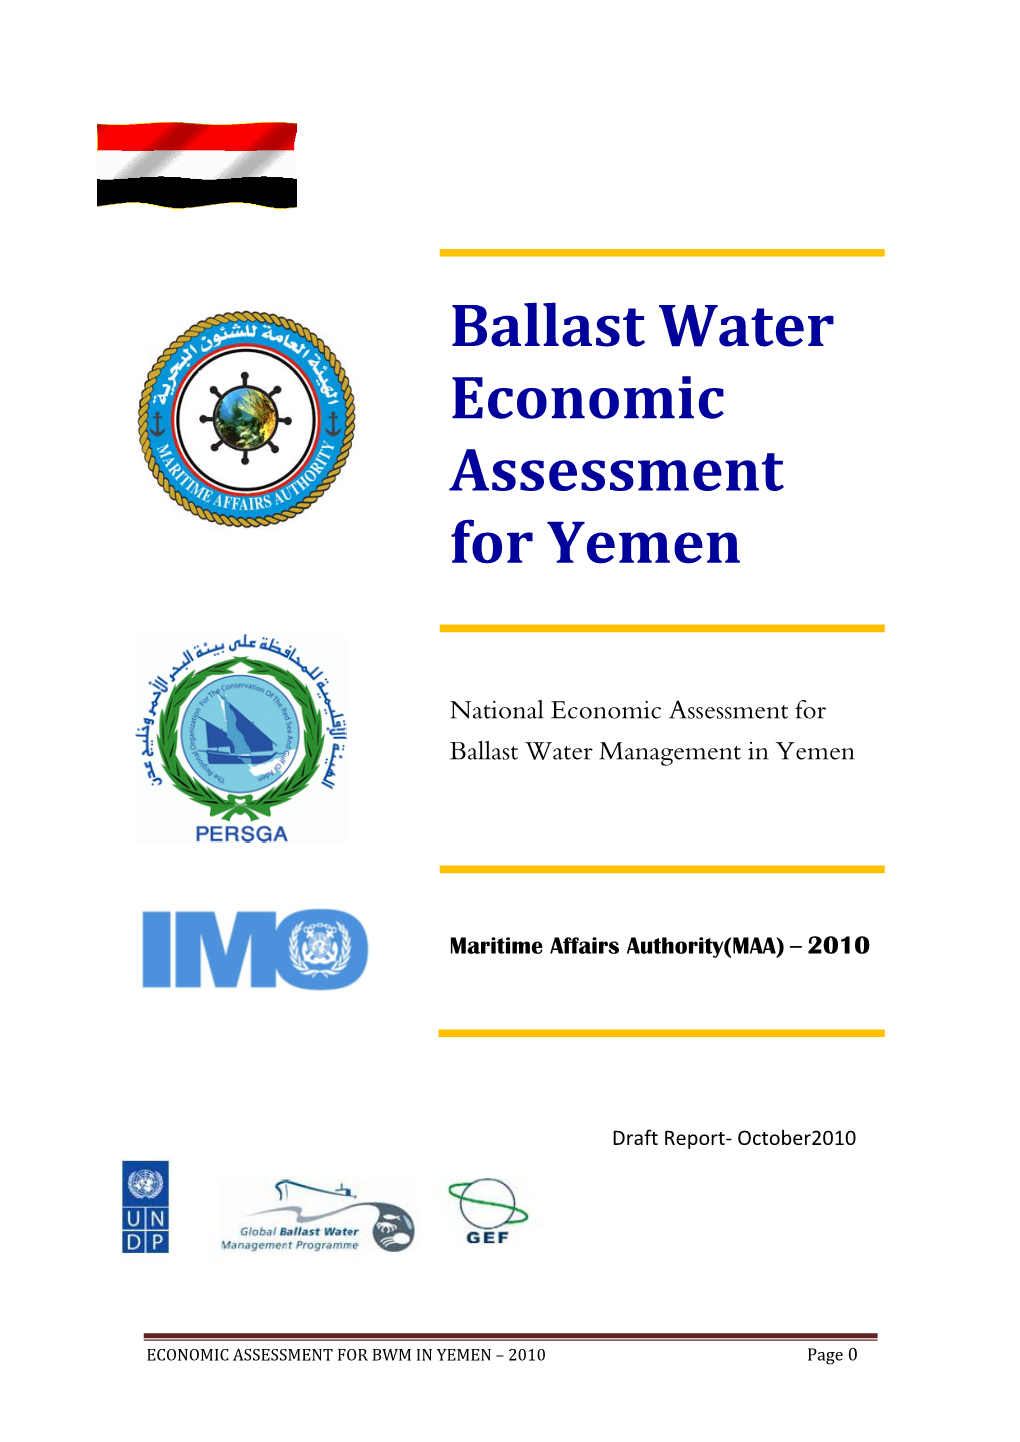 Ballast Water Economic Assessment for Yemen